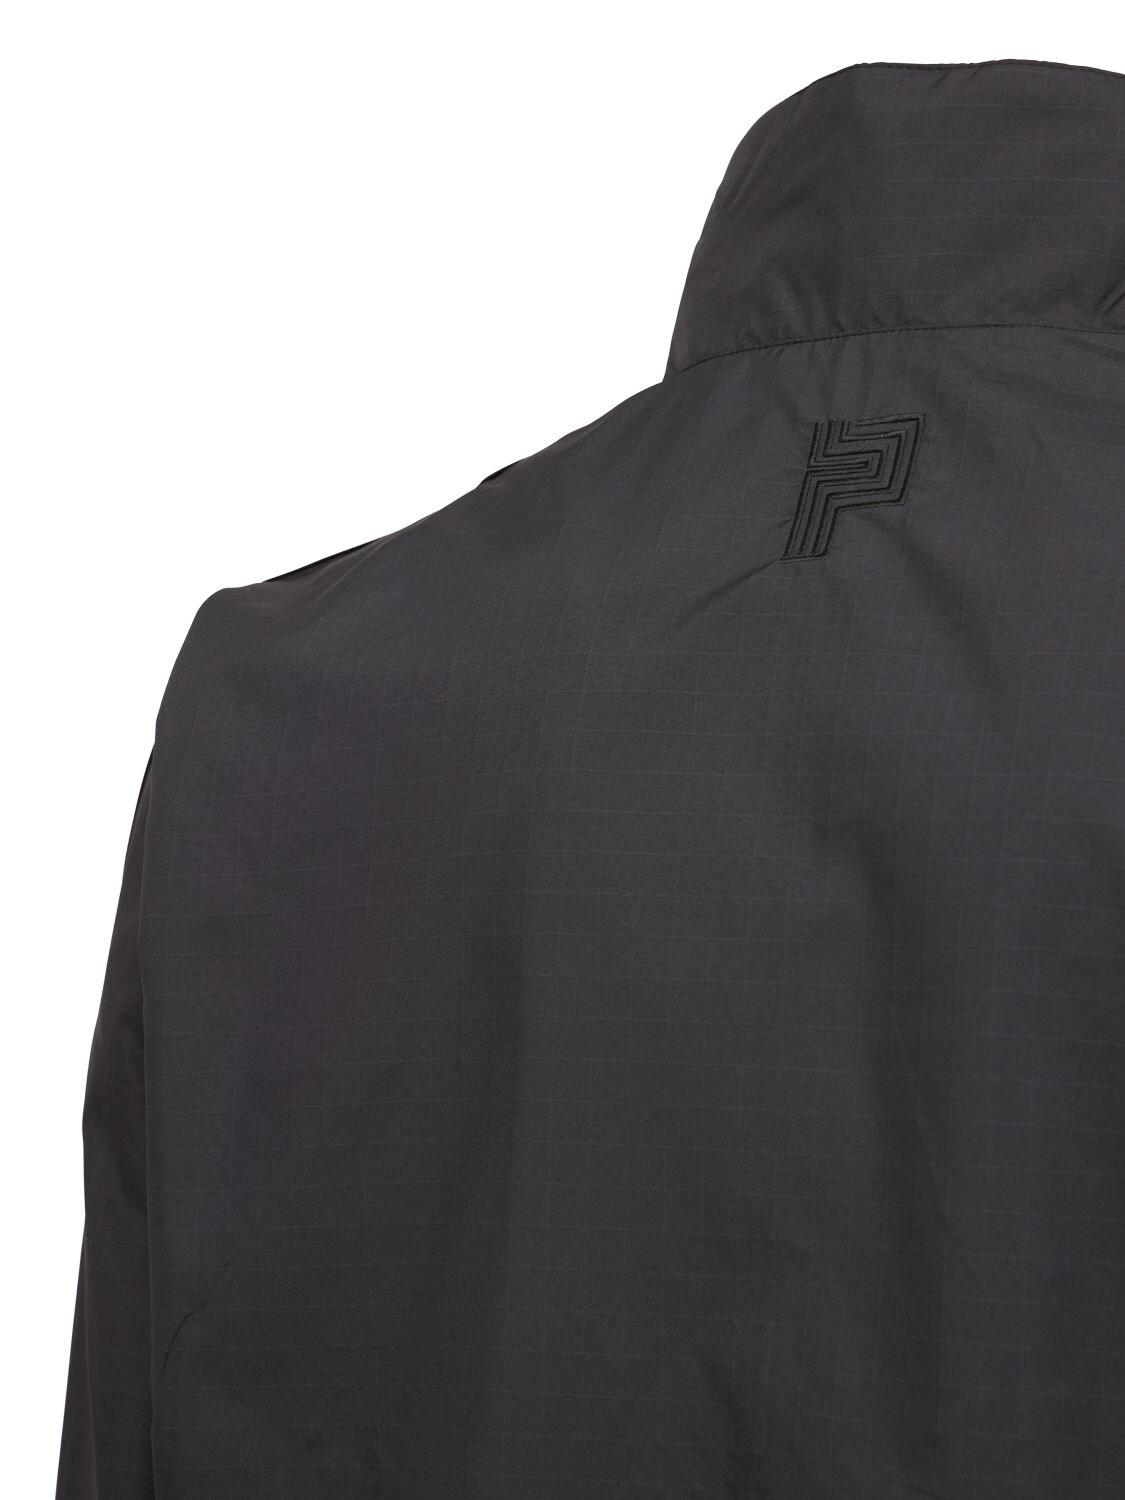 adidas Originals Paradigm Track Jacket in Black for Men | Lyst